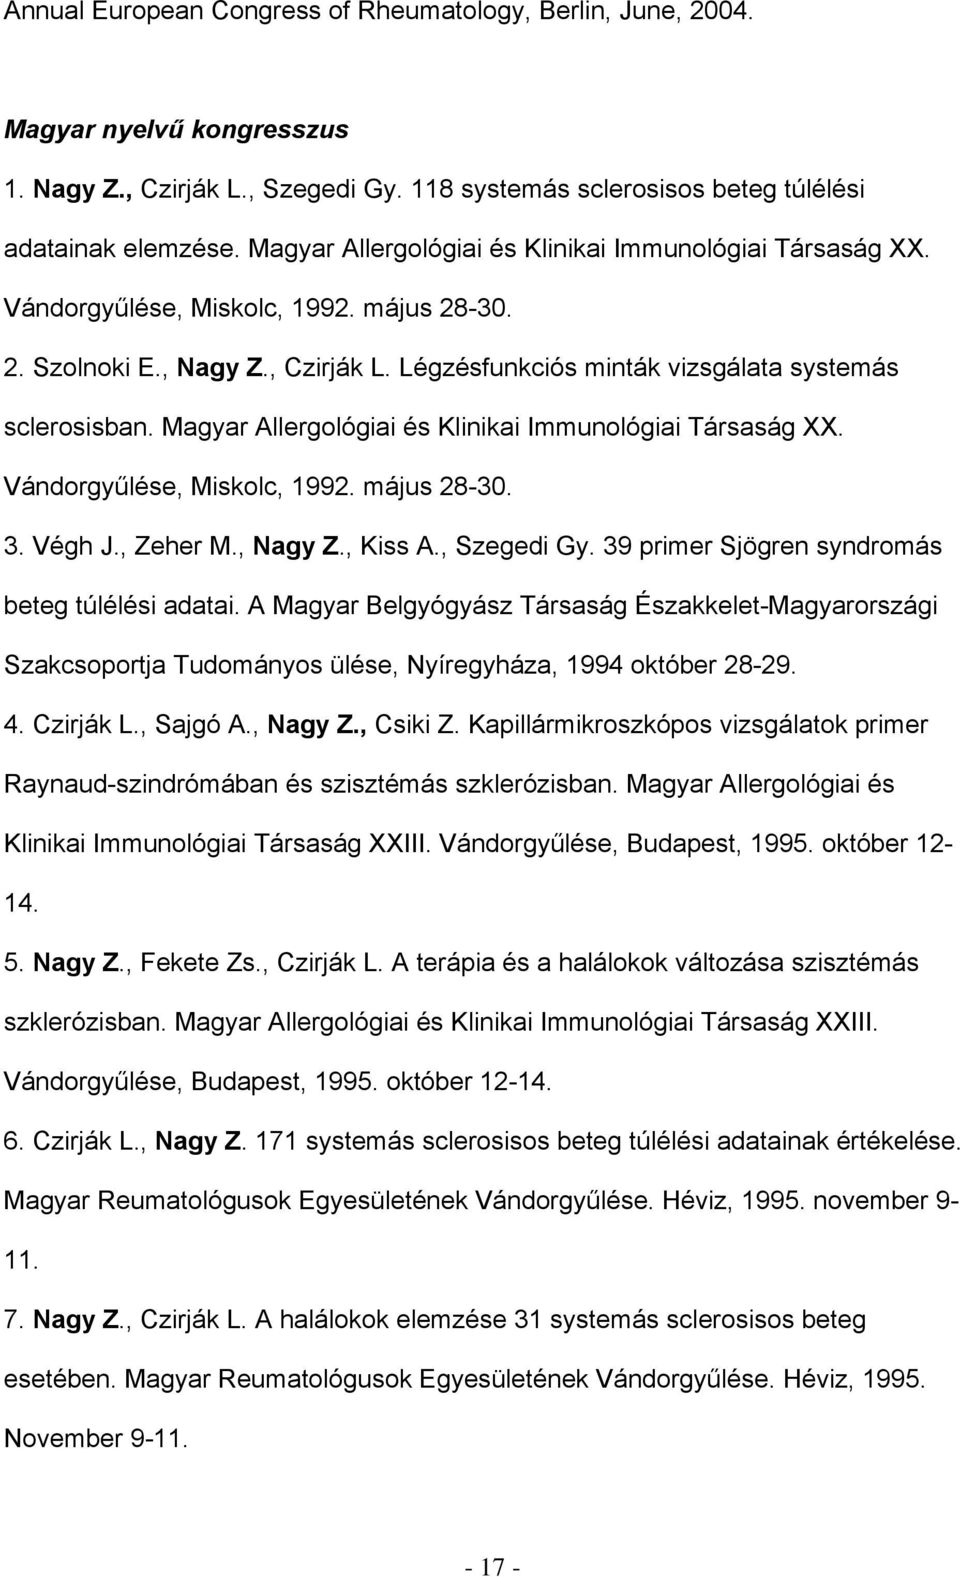 Magyar Allergológiai és Klinikai Immunológiai Társaság XX. Vándorgyűlése, Miskolc, 1992. május 28-30. 3. Végh J., Zeher M., Nagy Z., Kiss A., Szegedi Gy.